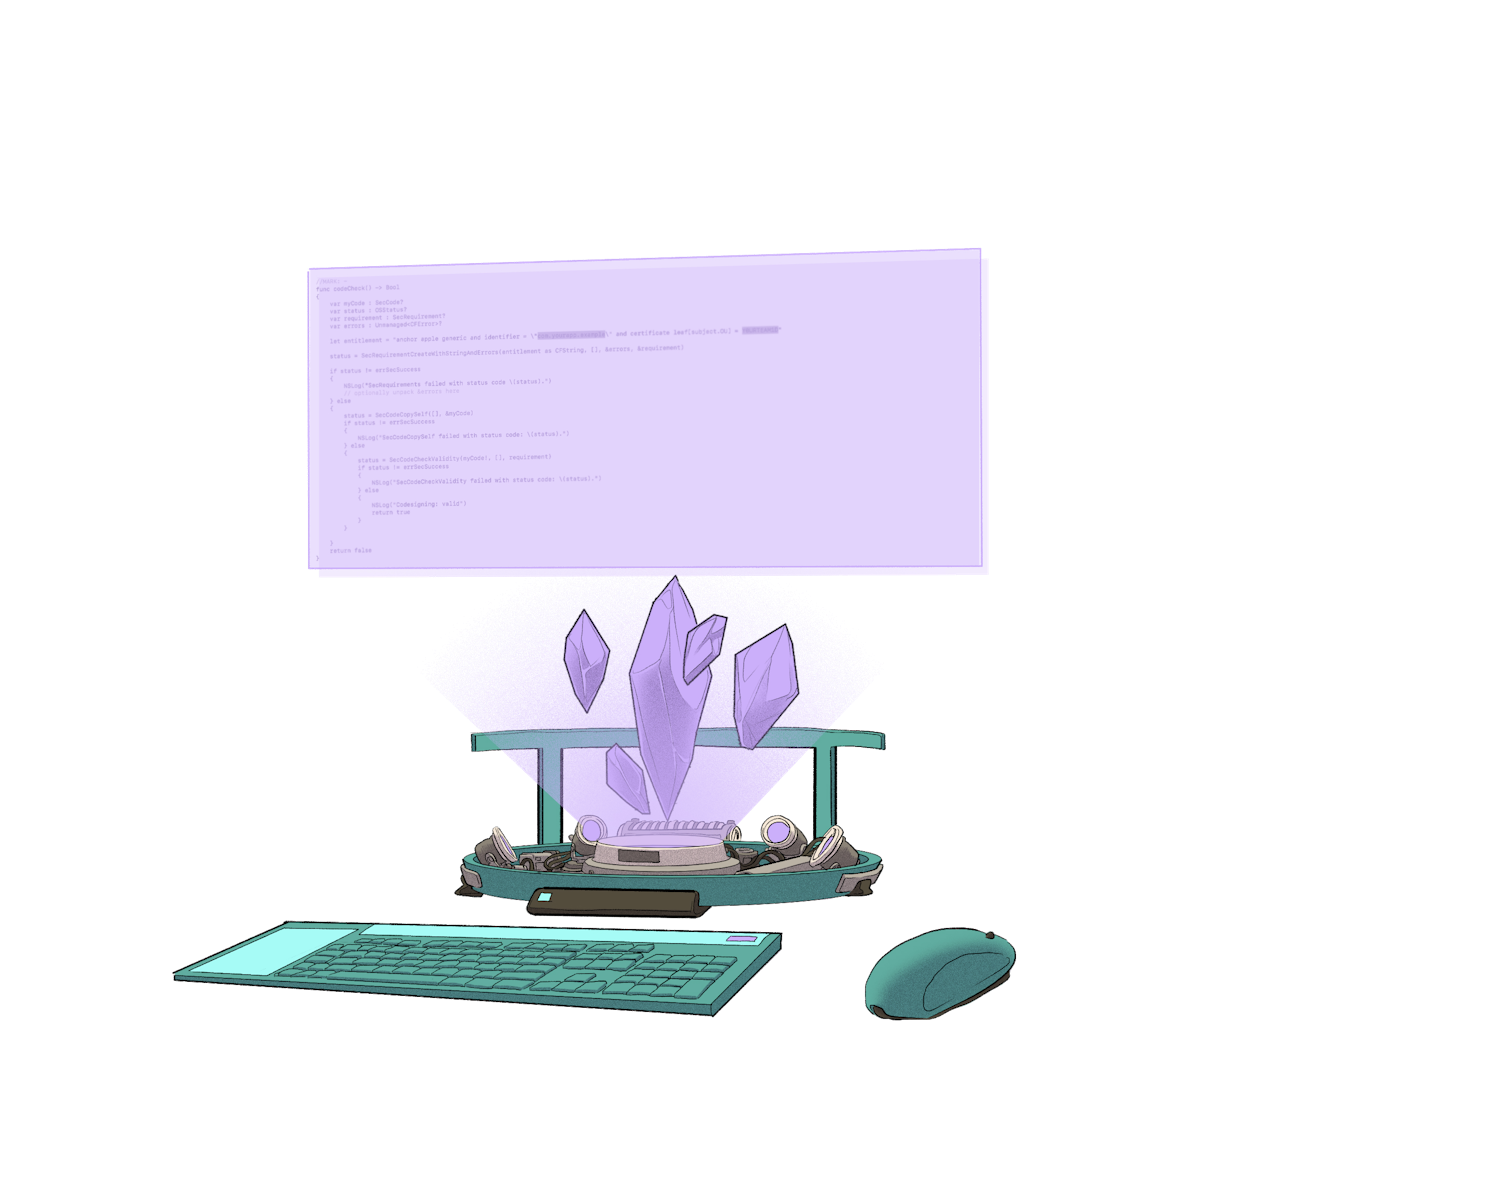 Ilustración de un ordenador futurista, propulsado por cristales de Ethereum.